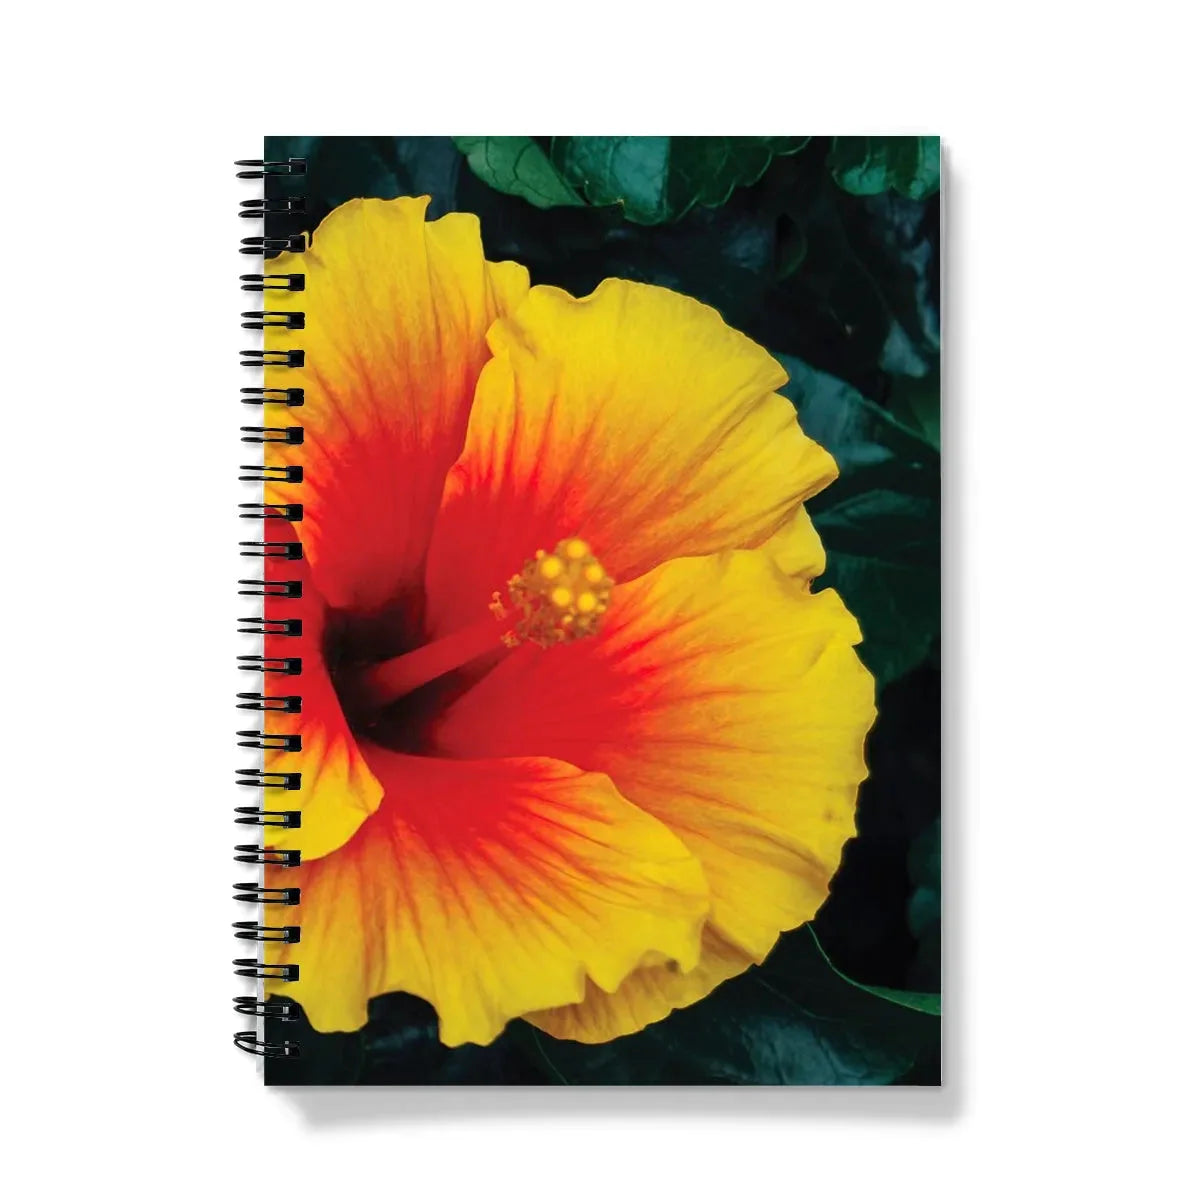 Tropicanarama Notebook - A5 - Graph Paper - Notebooks & Notepads - Aesthetic Art